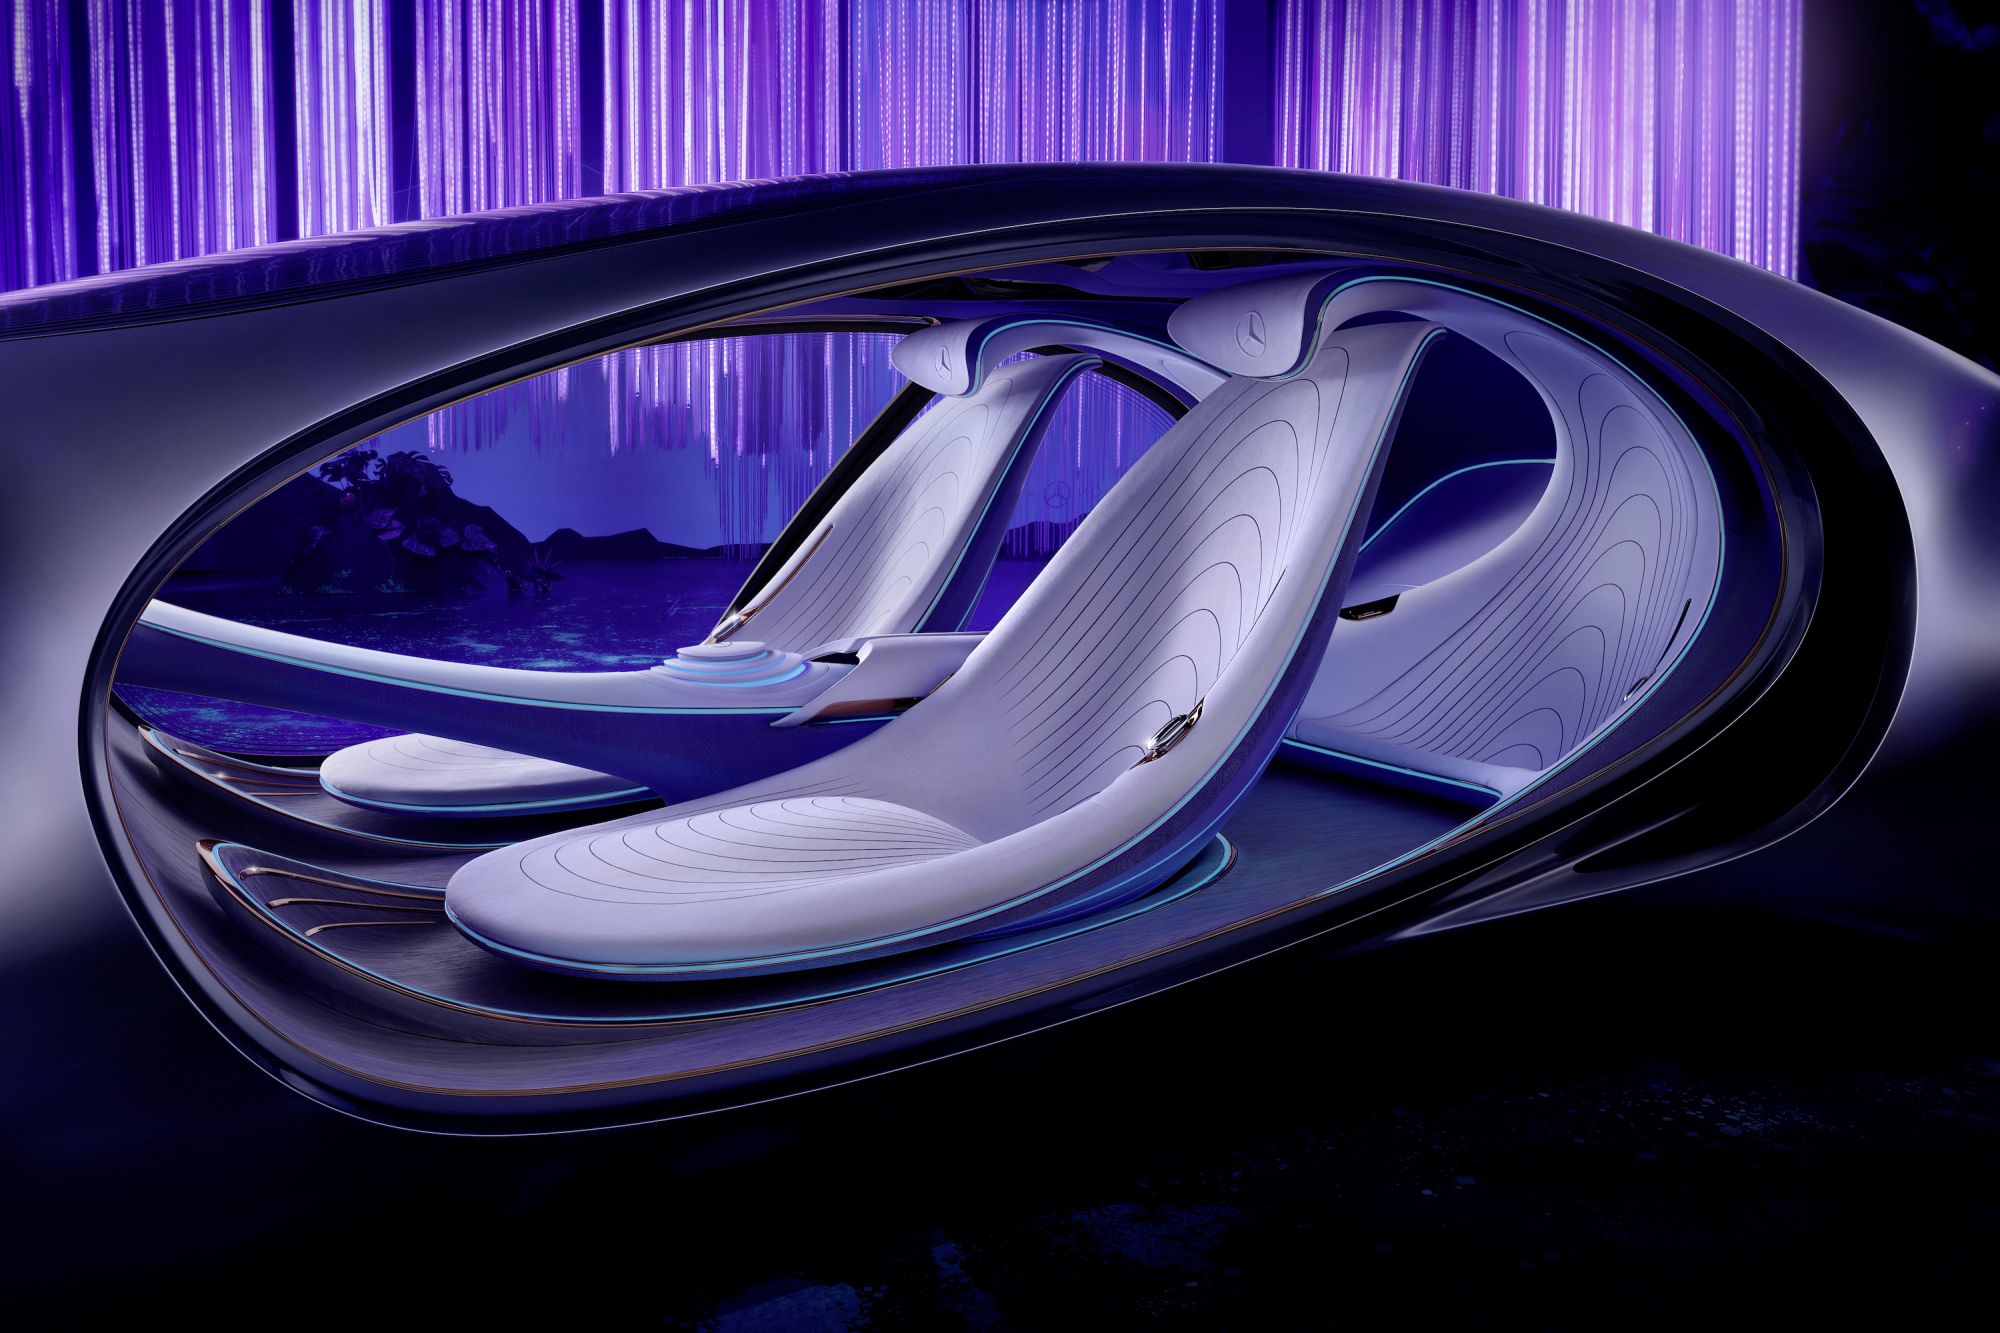 Chi tiết MercedesBenz Vision AVTR  mẫu xe lấy cảm hứng từ Avatar